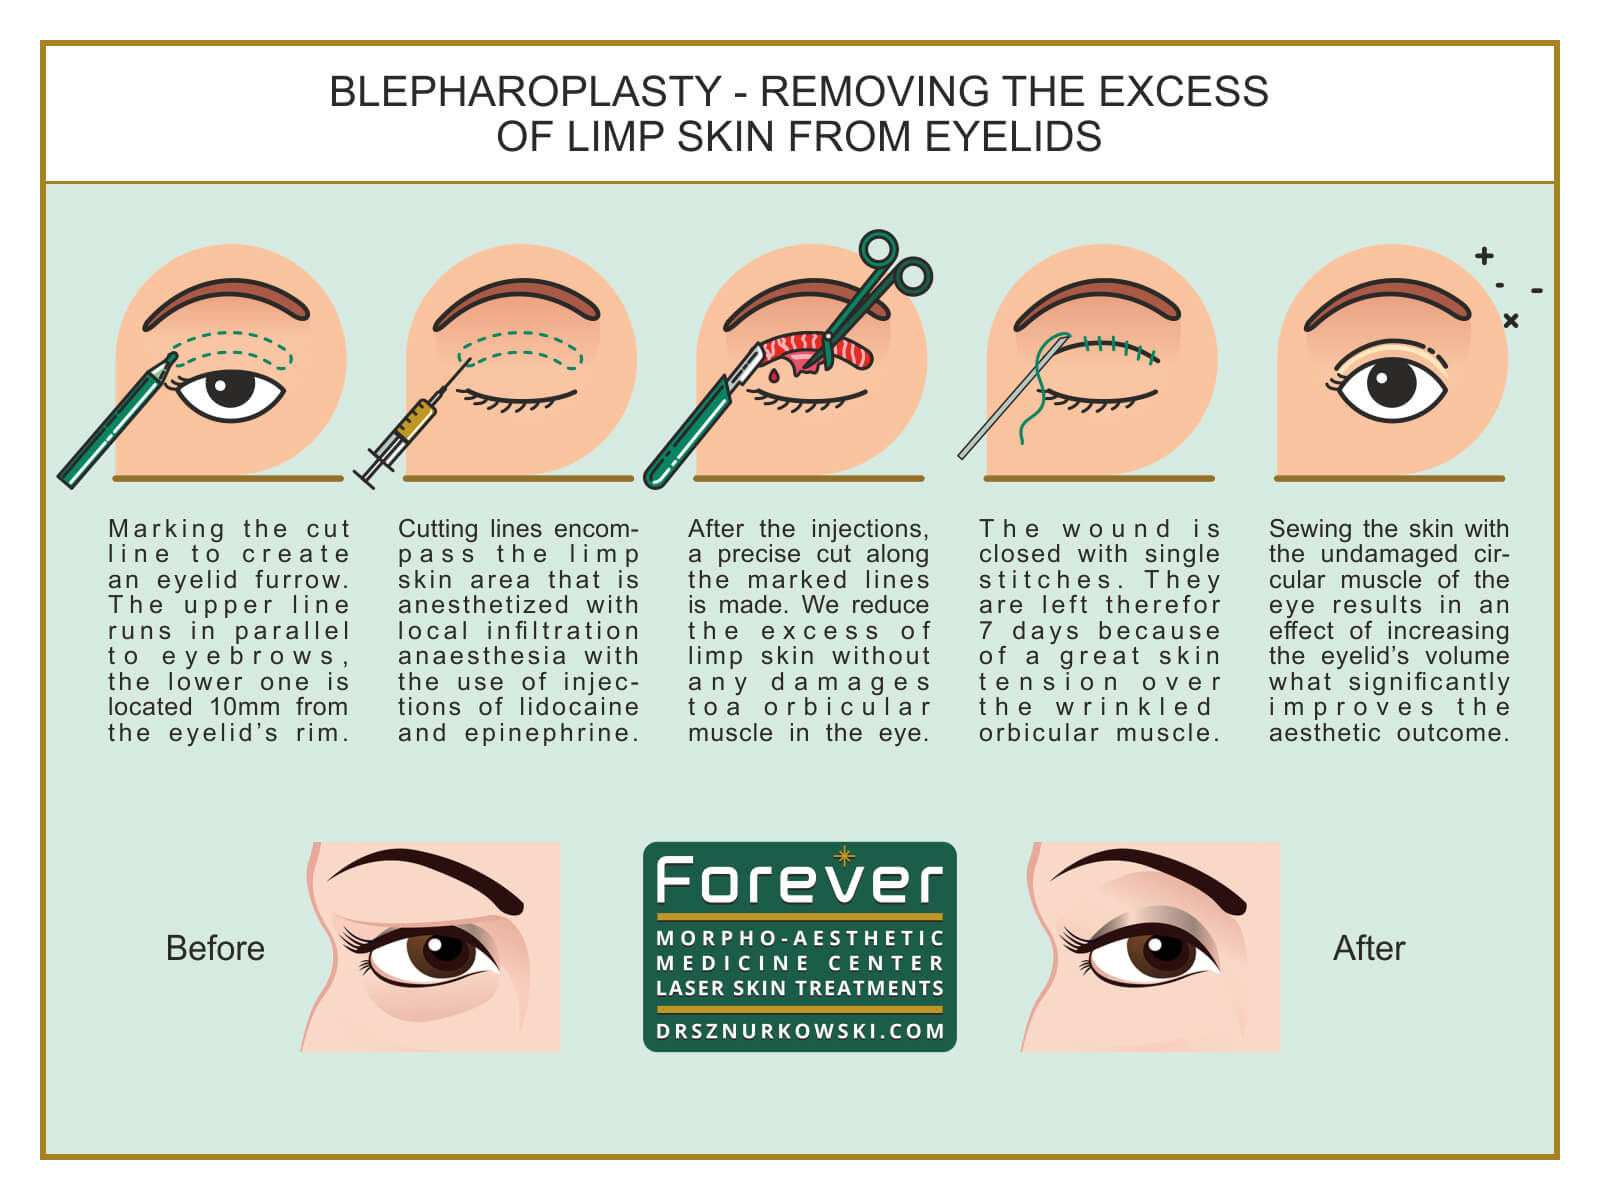 Blepharoplasty - Removing The Excess of Limp Skin From Eyelids (80x60) EN.jpg